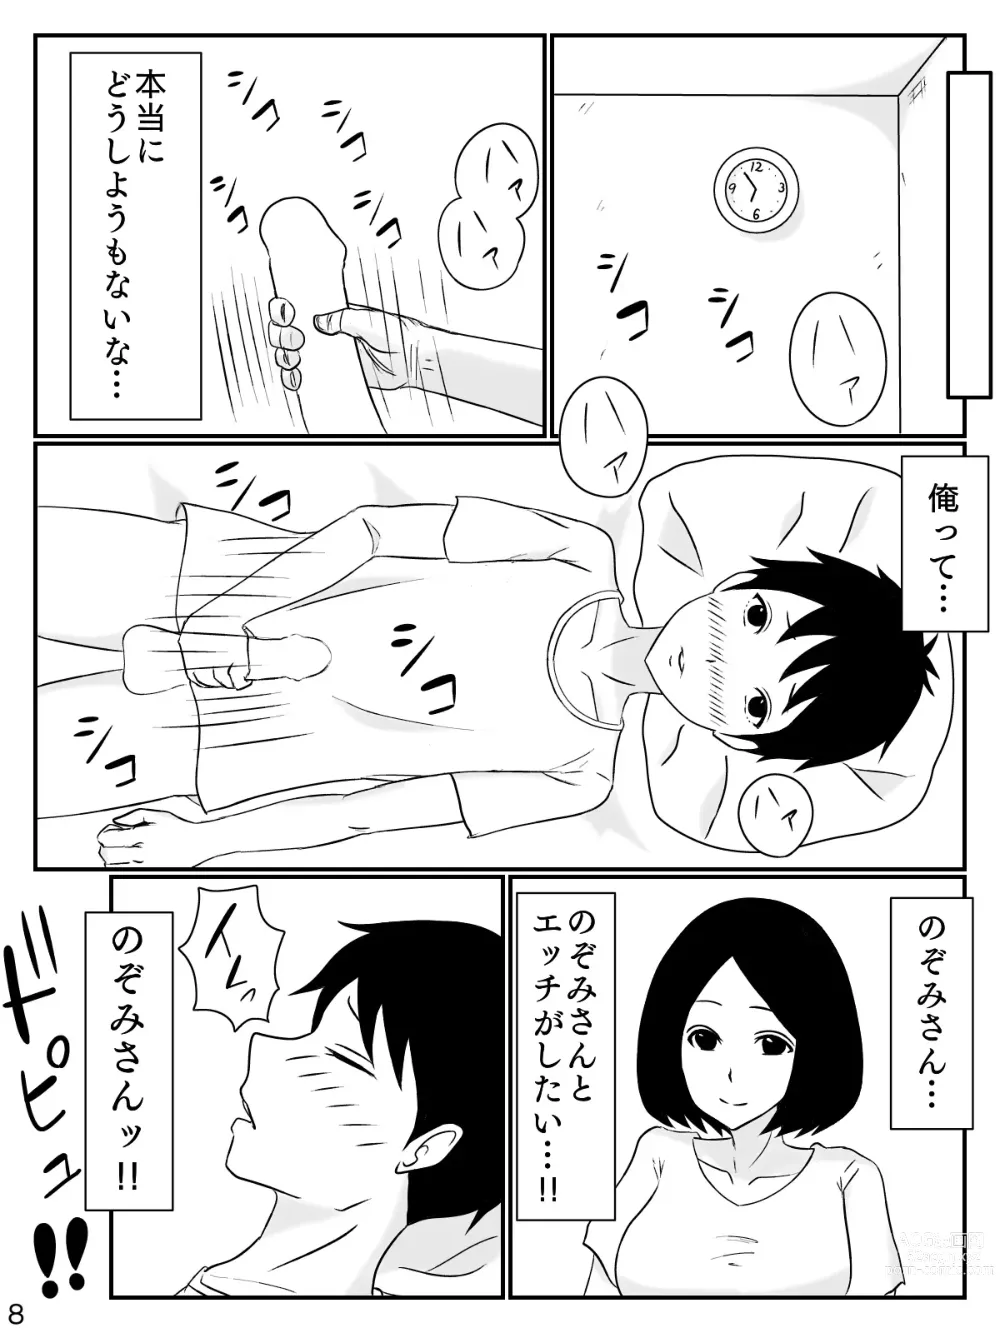 Page 9 of doujinshi 6-tsu Chigai no Okaasan